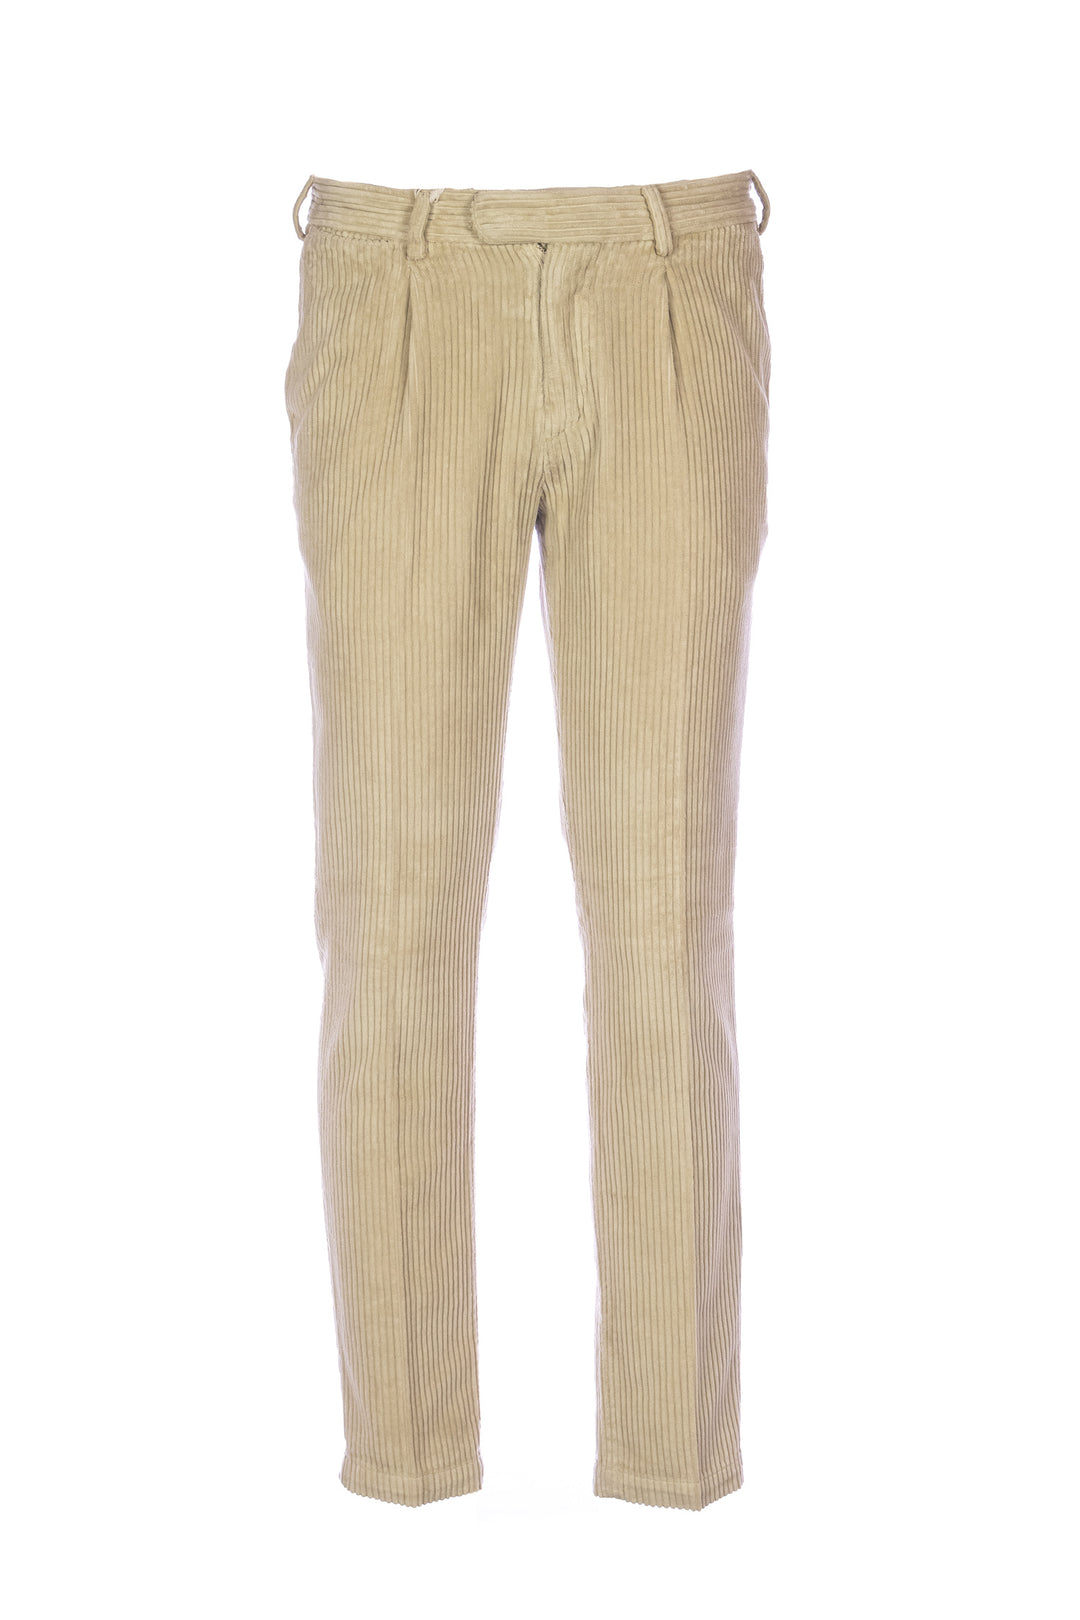 DEVORE Pantalone cammello in velluto rocciatore con vita elastica - Mancinelli 1954